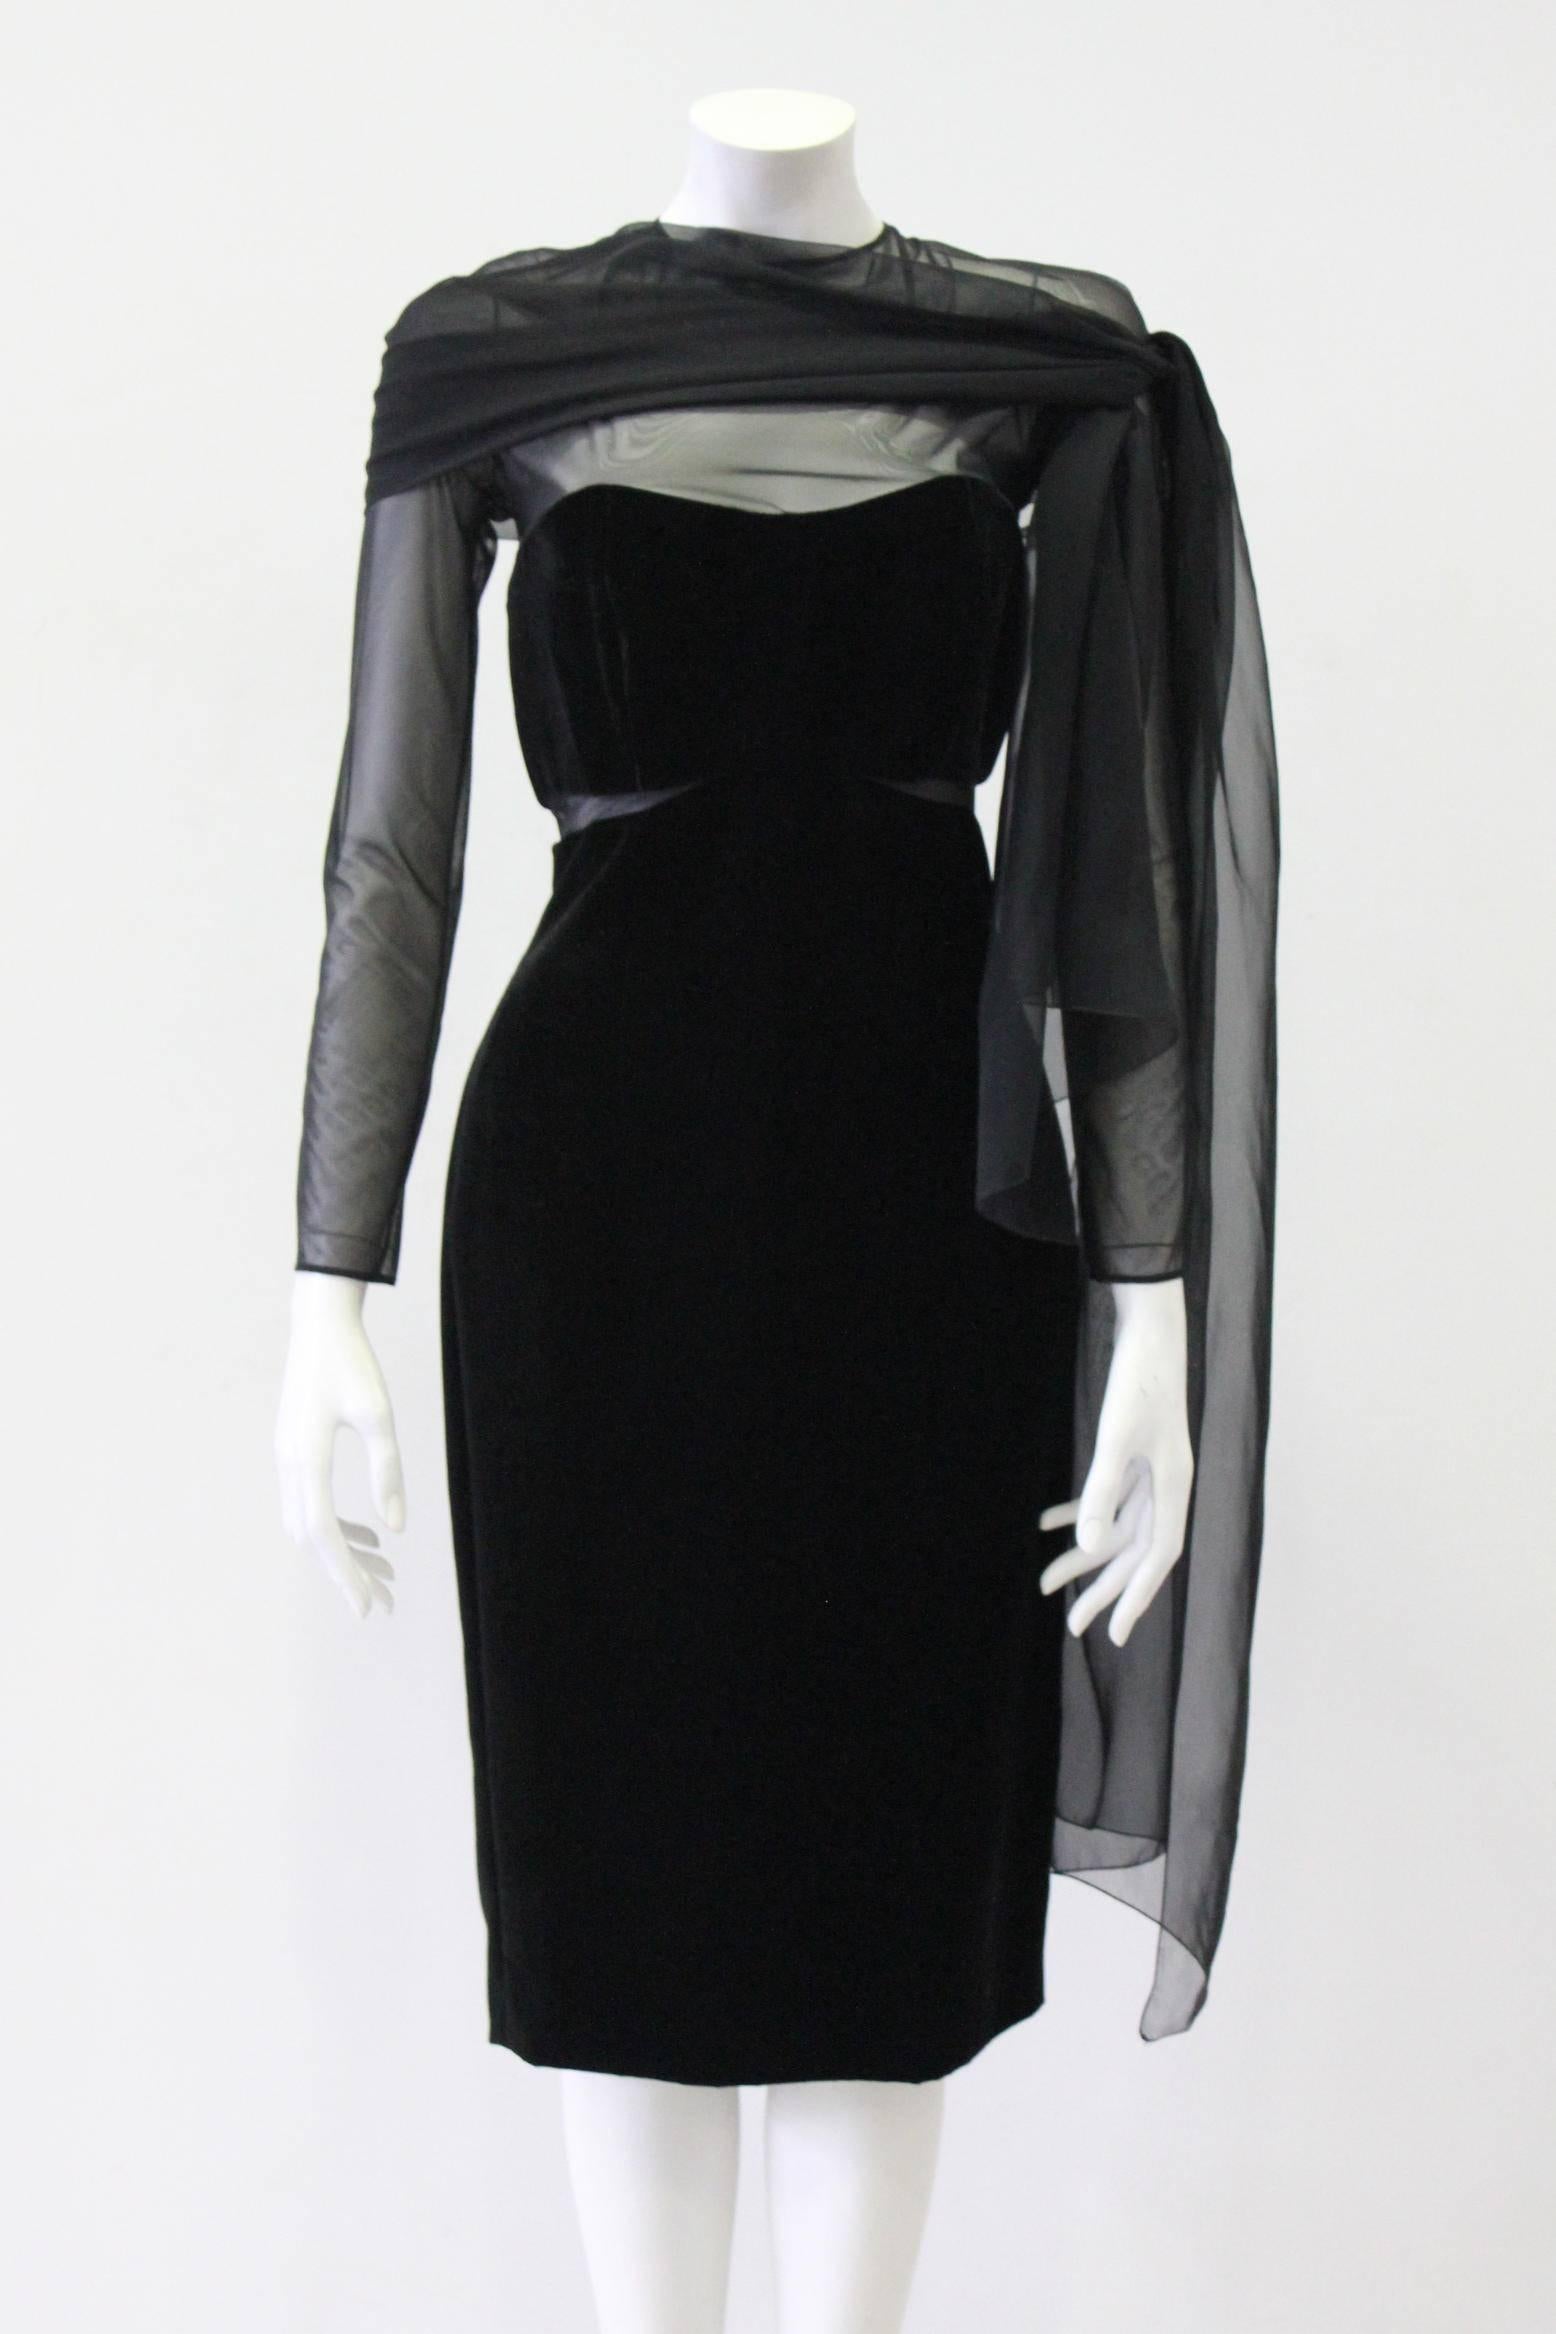 Black Unique Gianfranco Ferre Sheer Velvet Cocktail Dress 1980s For Sale